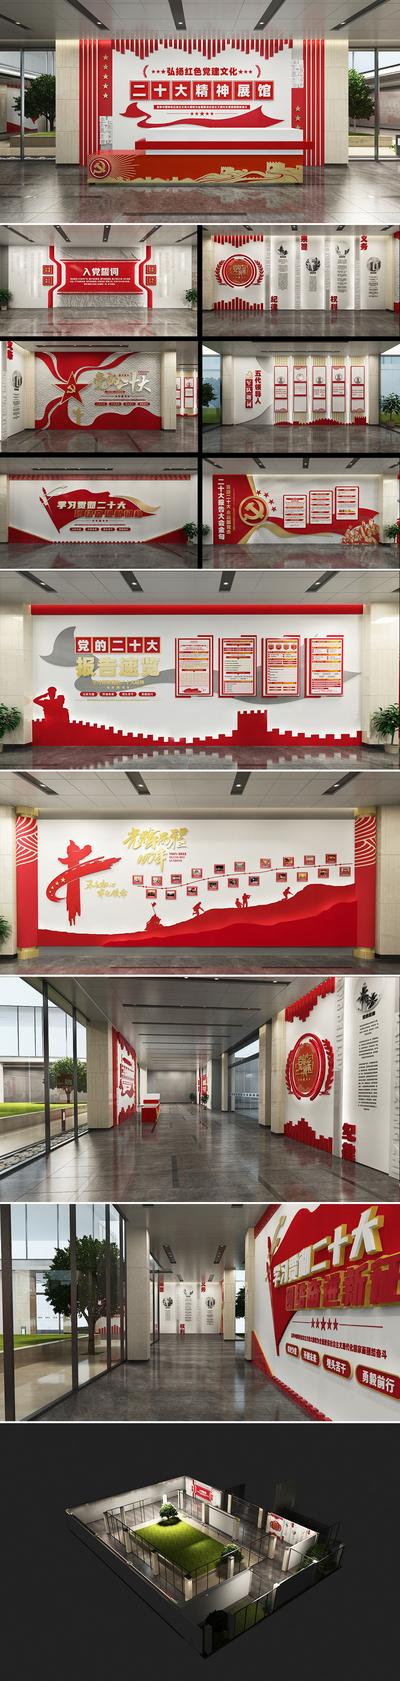 南门网 广告 海报 党建 文化墙 二十大 展厅 系列 品质